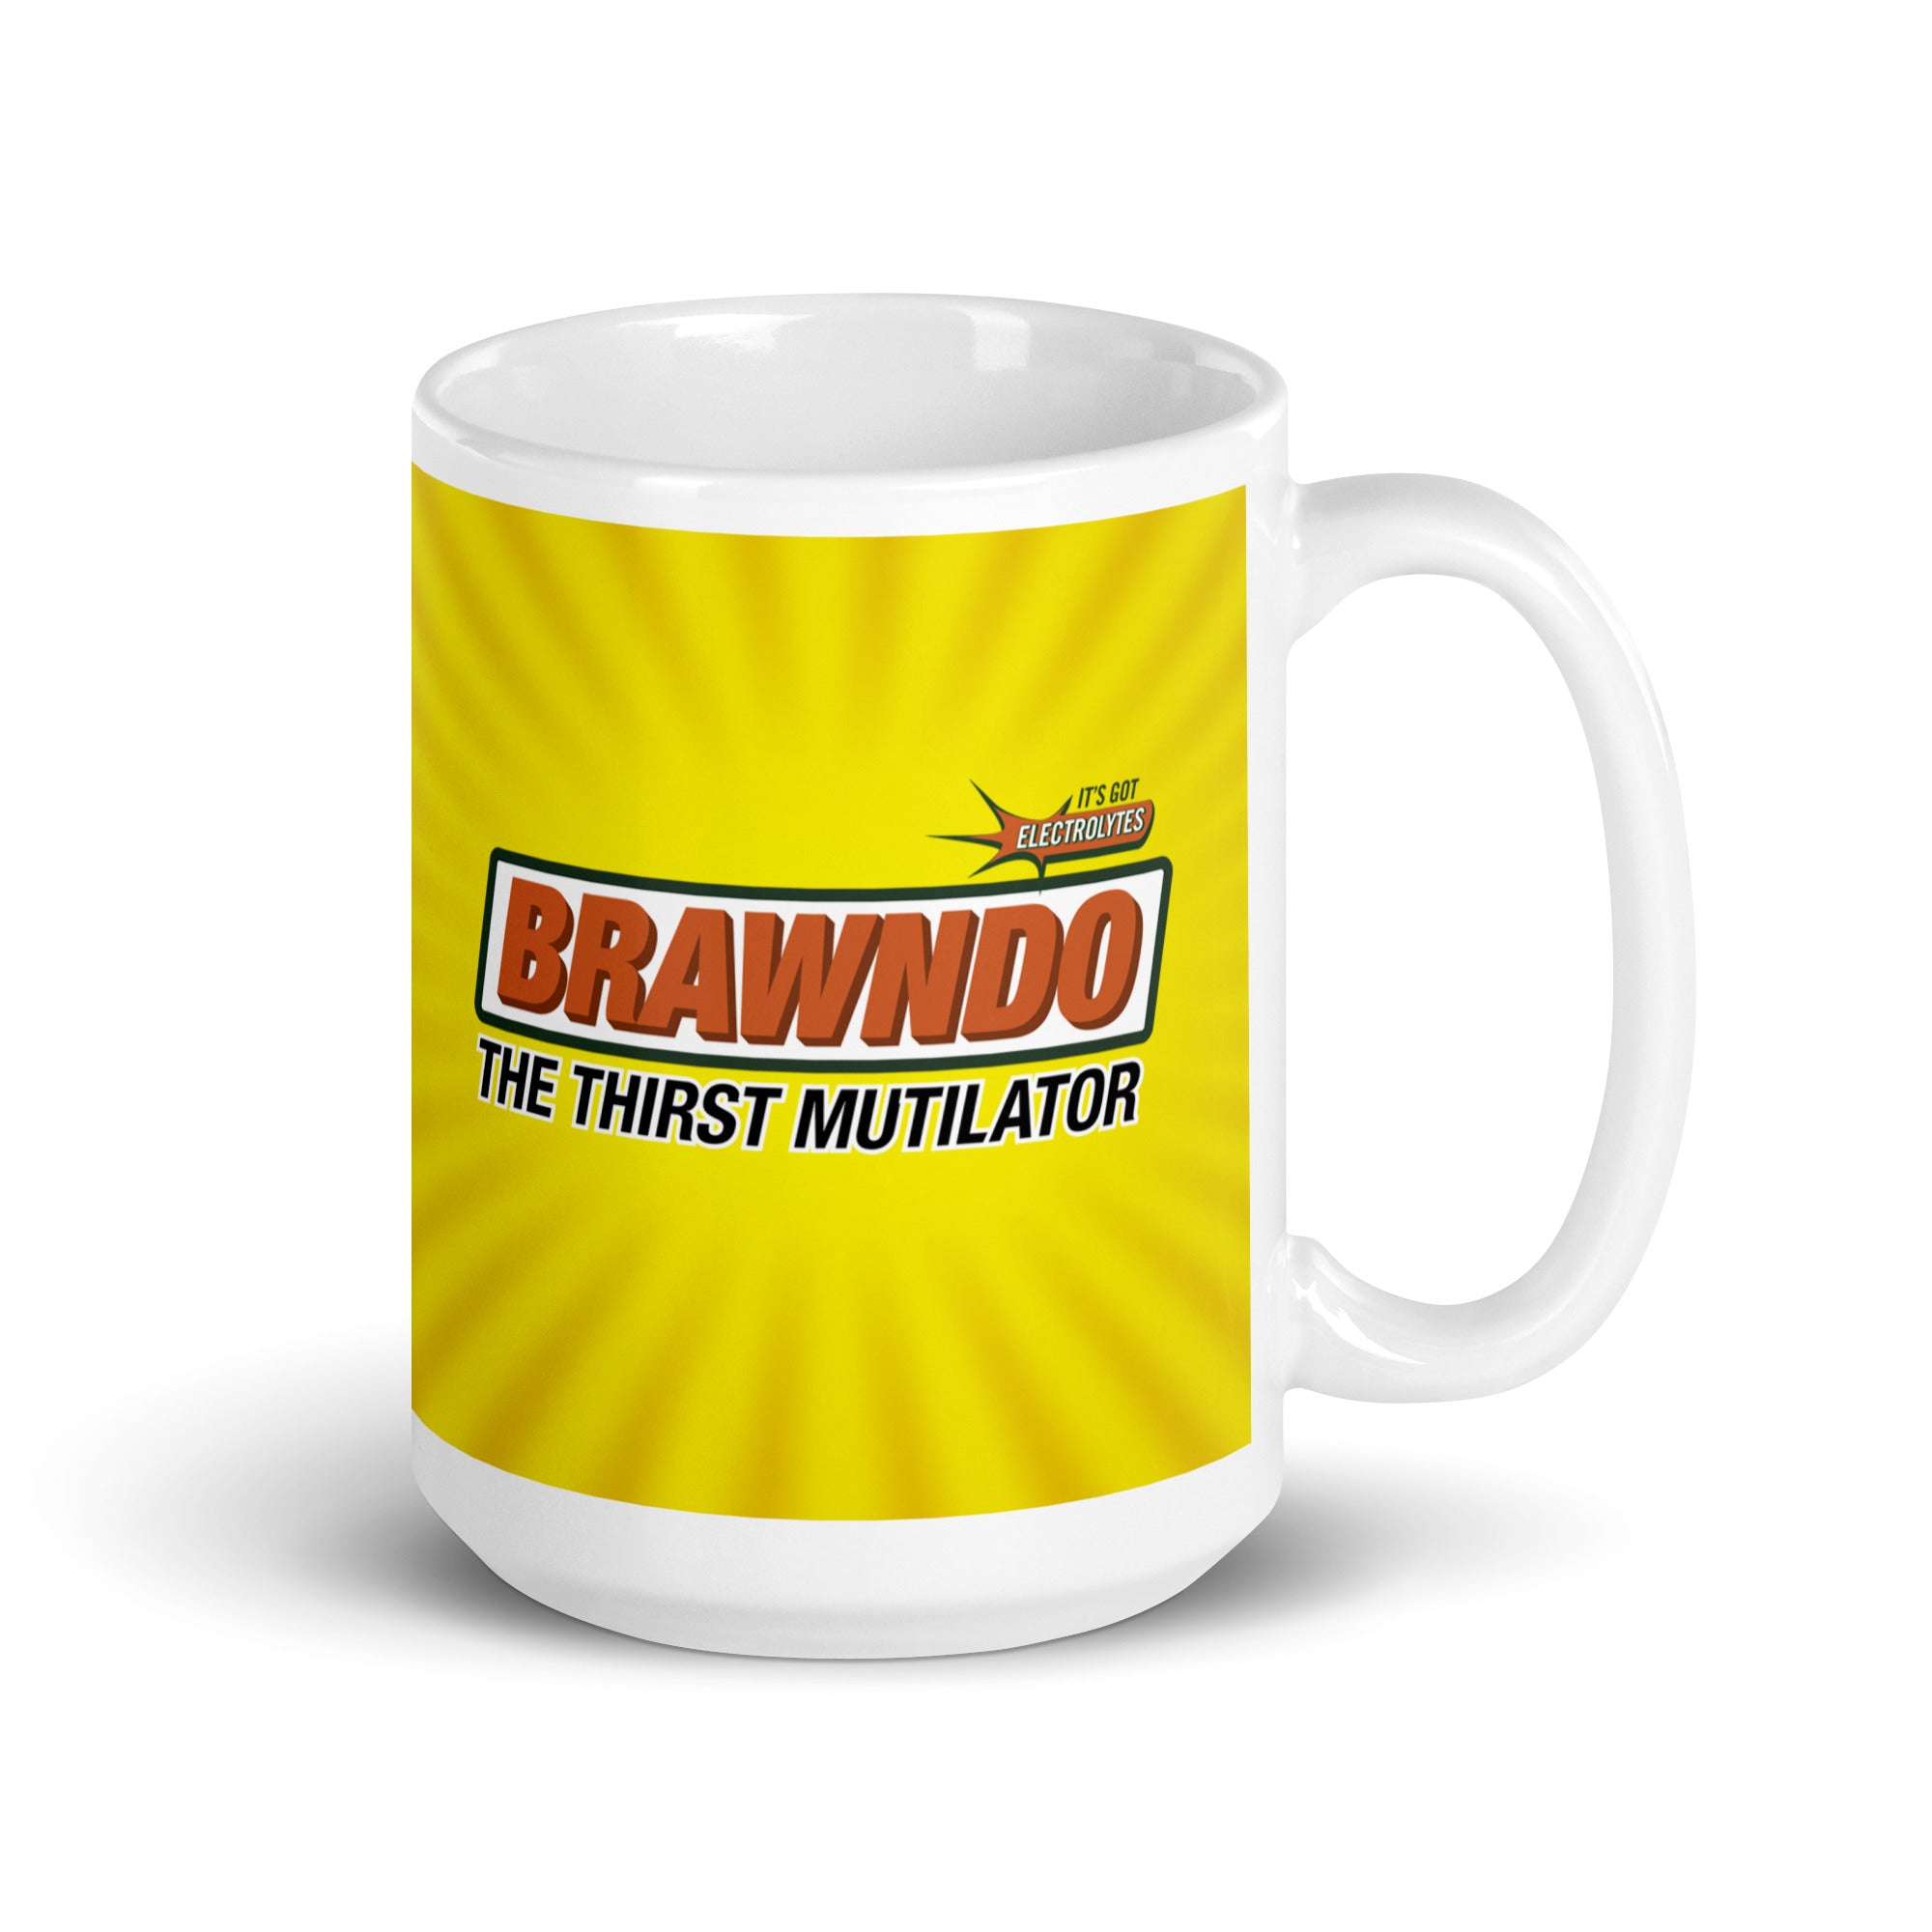 BRAWNDO The Thirst Mutilator Mugs